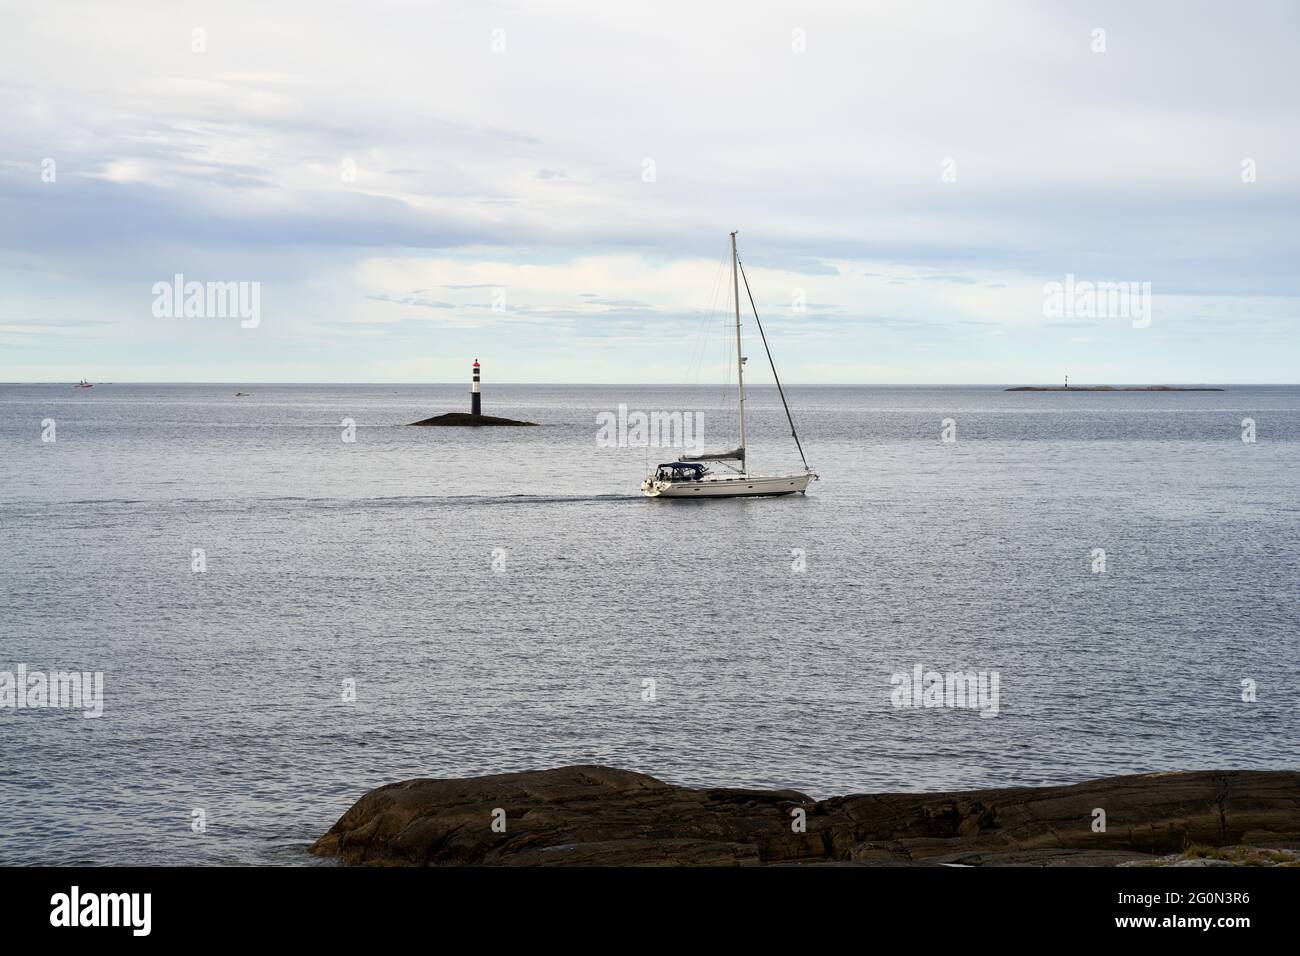 VEVANG, NORVEGIA - 28 luglio 2020: Una famiglia sta godendo una gita in barca tra le isole appartengono alla strada dell'Oceano Atlantico in Norvegia Foto Stock